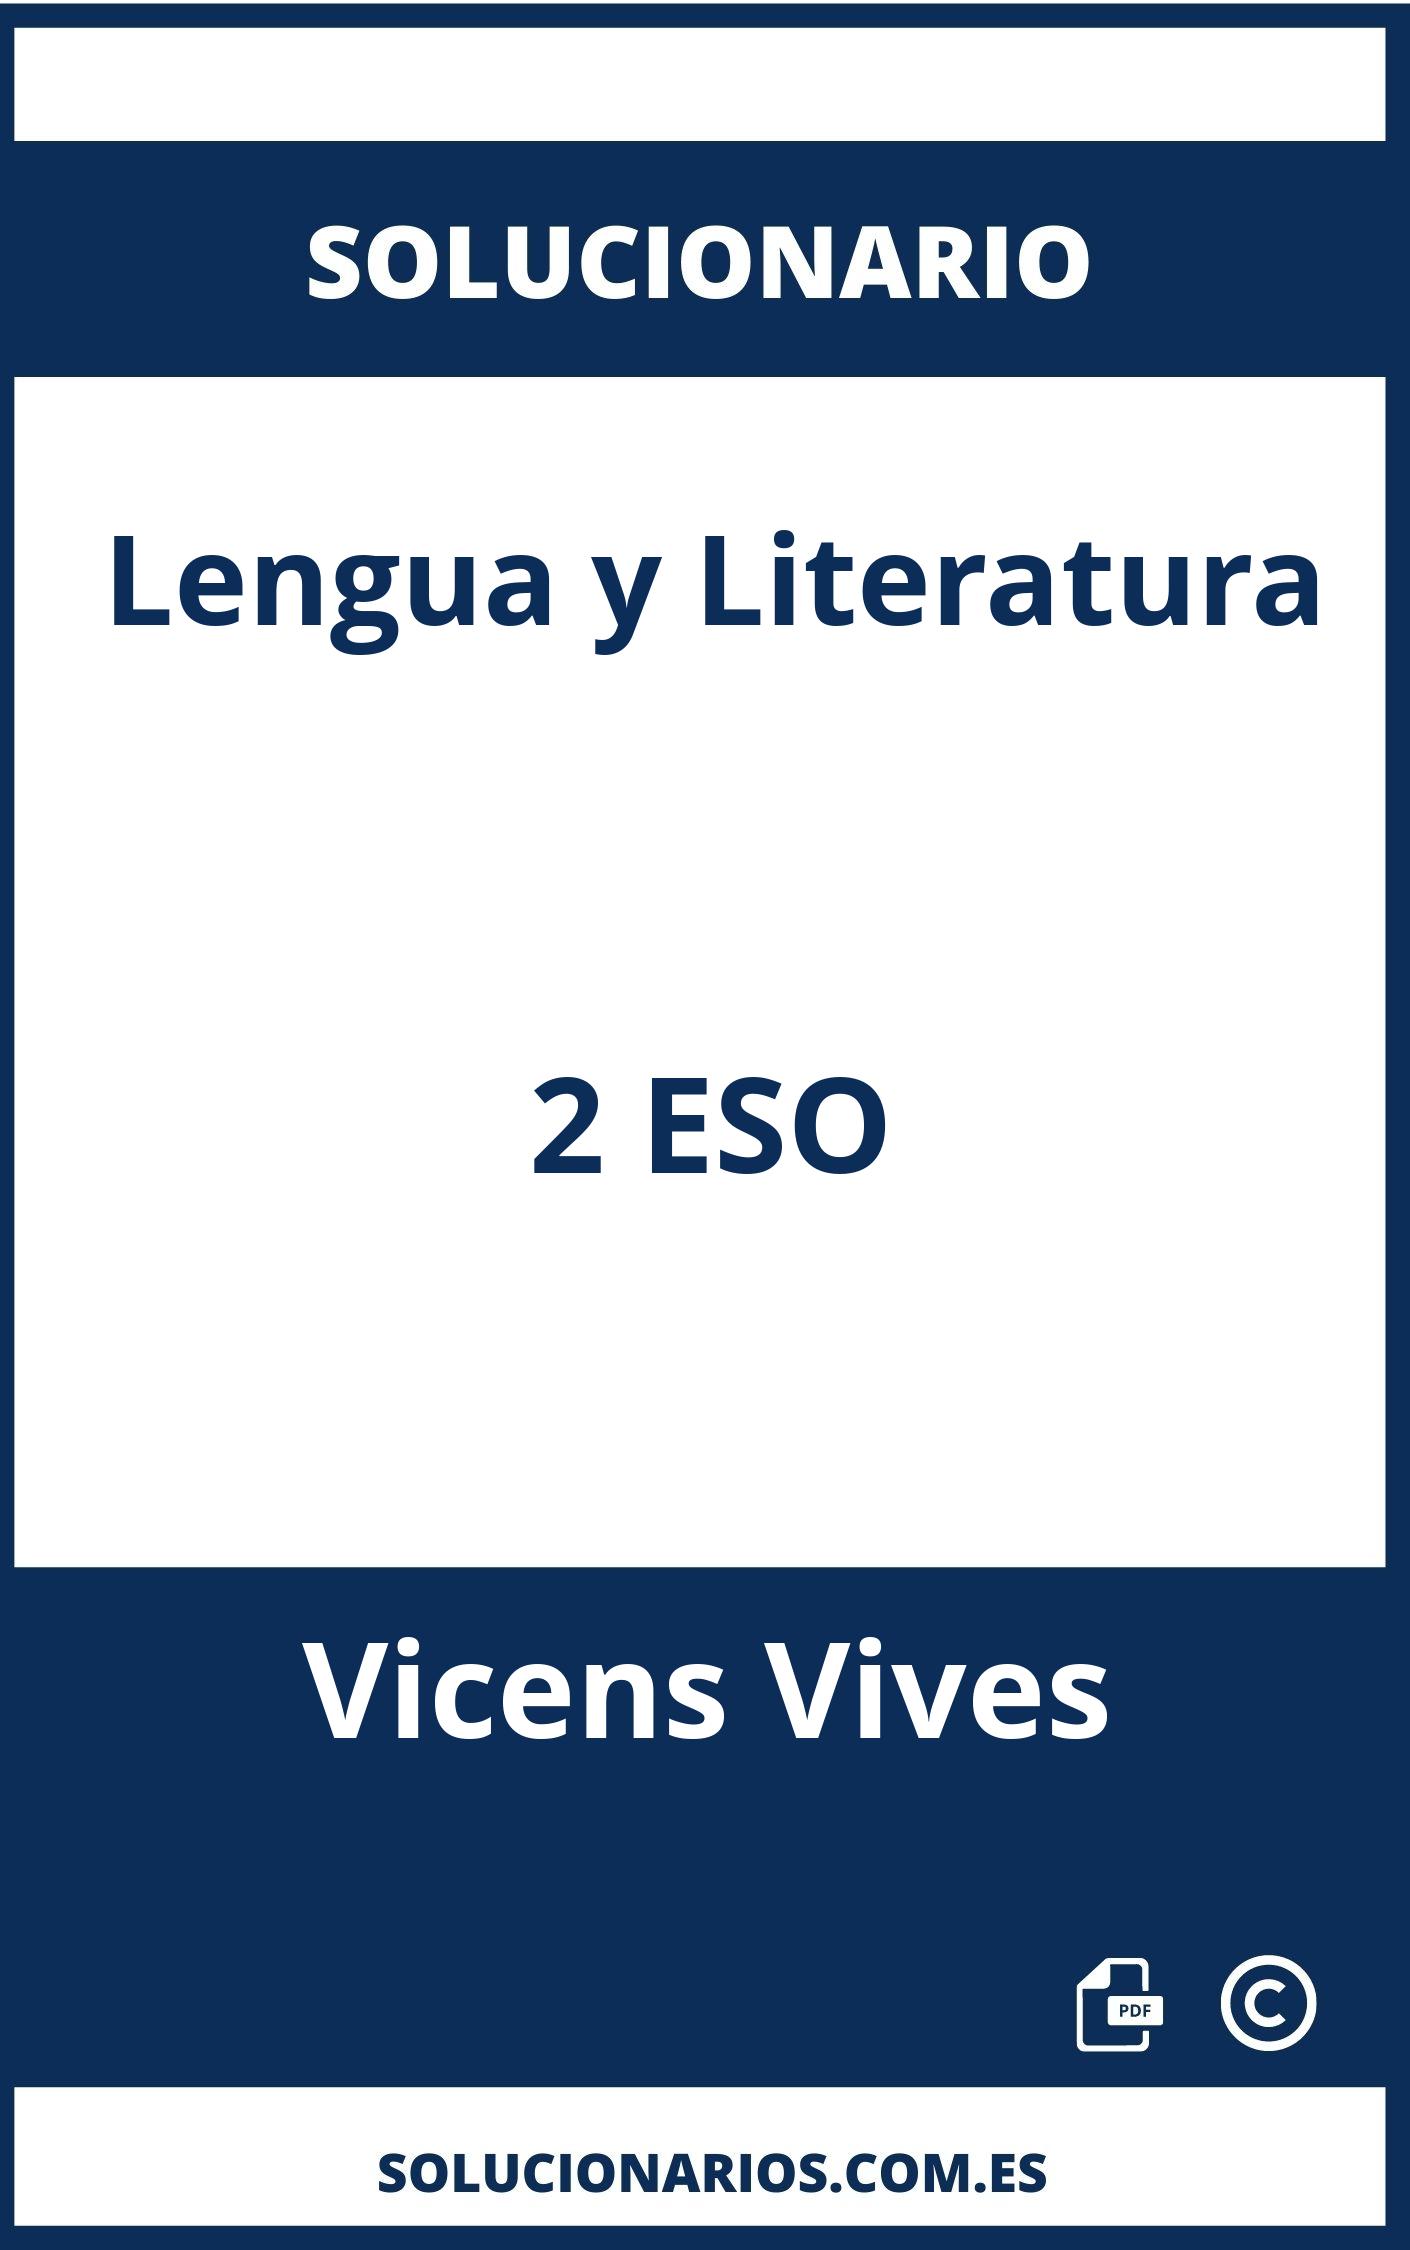 Solucionario Lengua y Literatura 2 ESO Vicens Vives